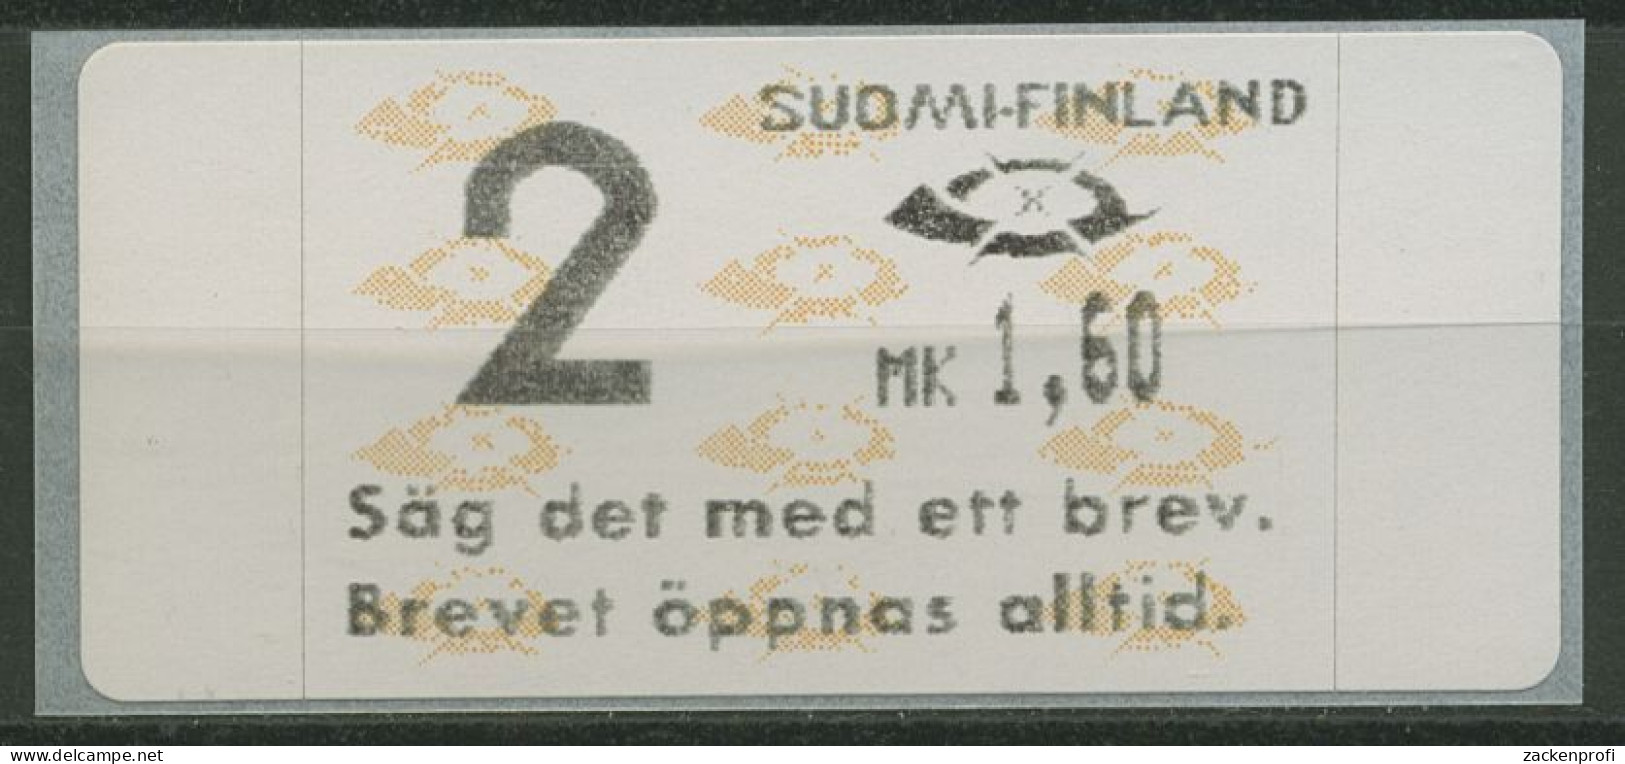 Finnland ATM 1993 Posthörner Einzelwert ATM 12.7 Z2 Postfrisch - Machine Labels [ATM]